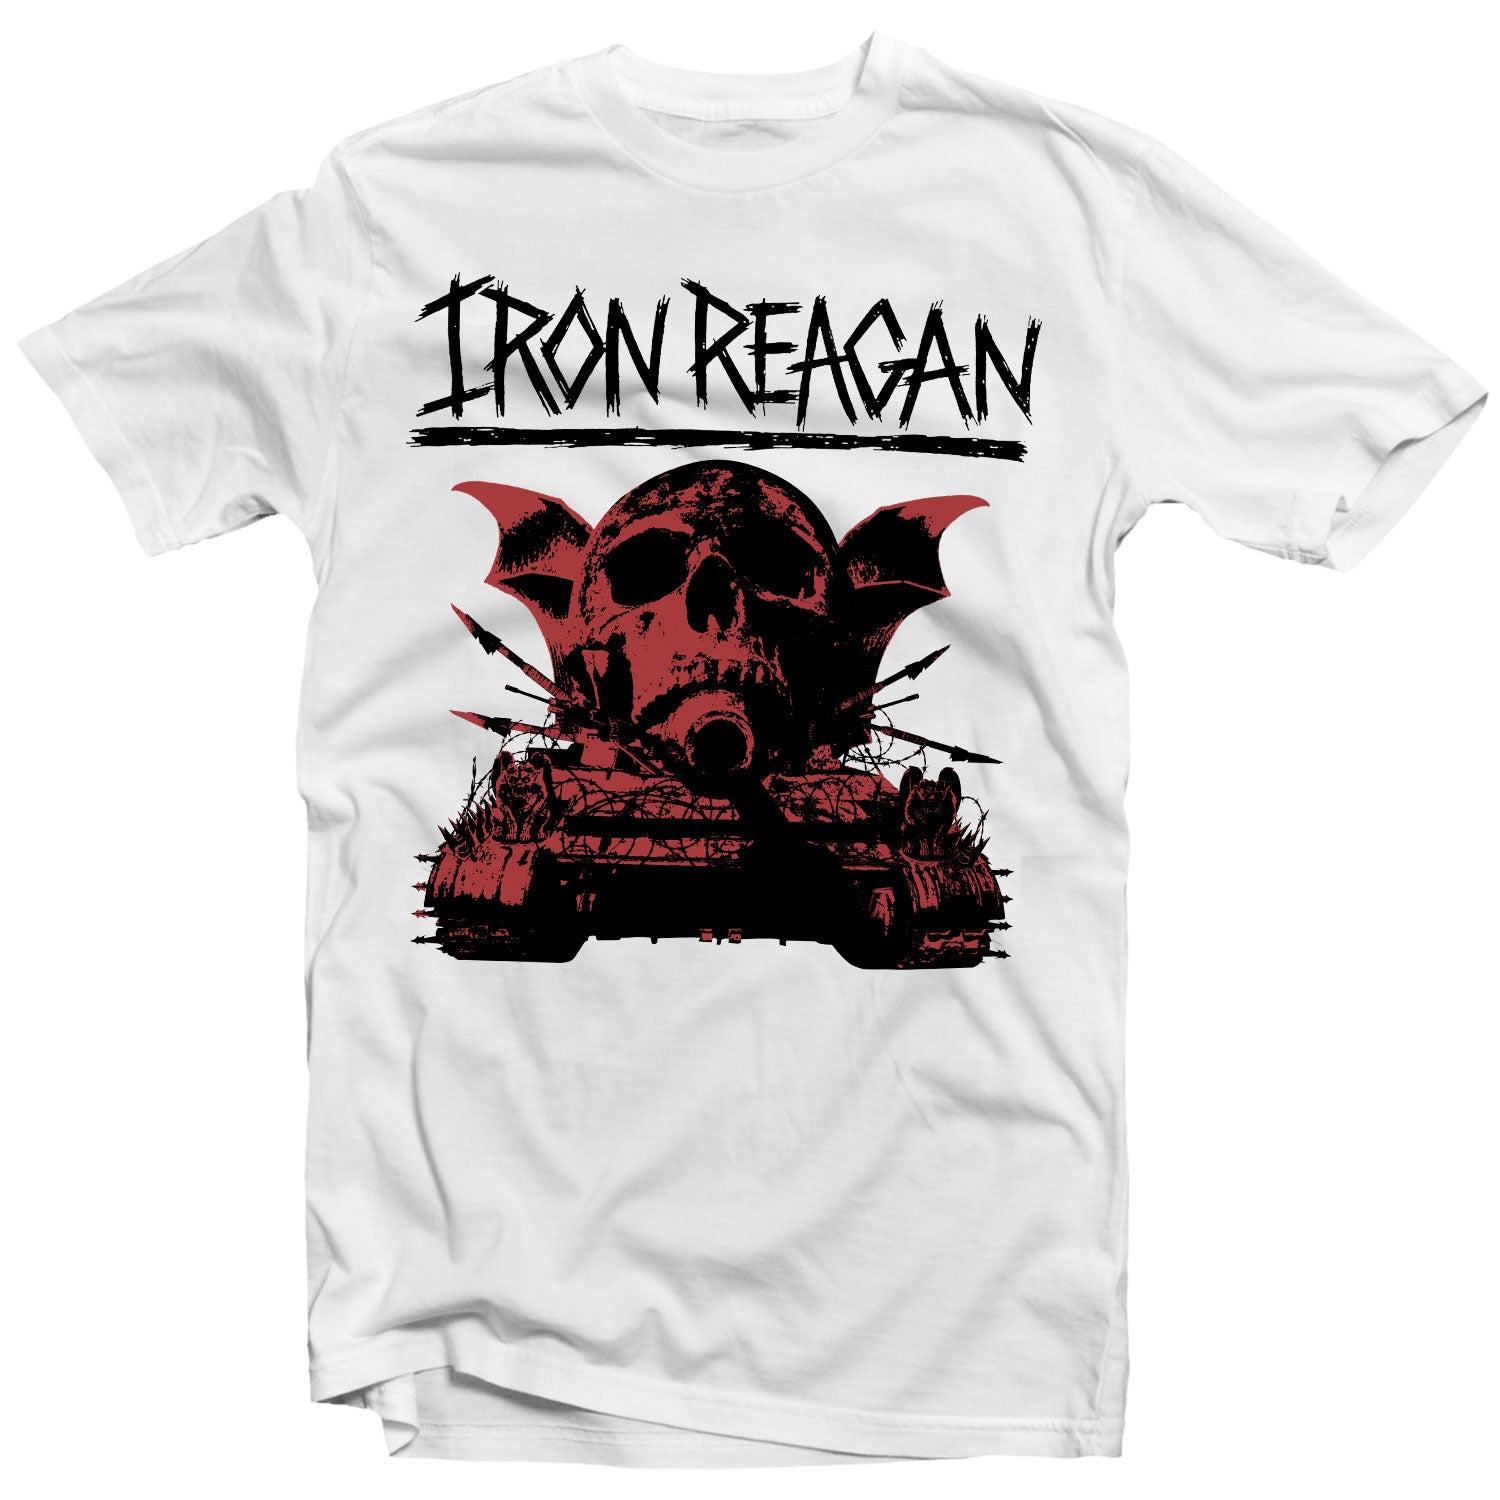 Iron Reagan "Warning" T-Shirt